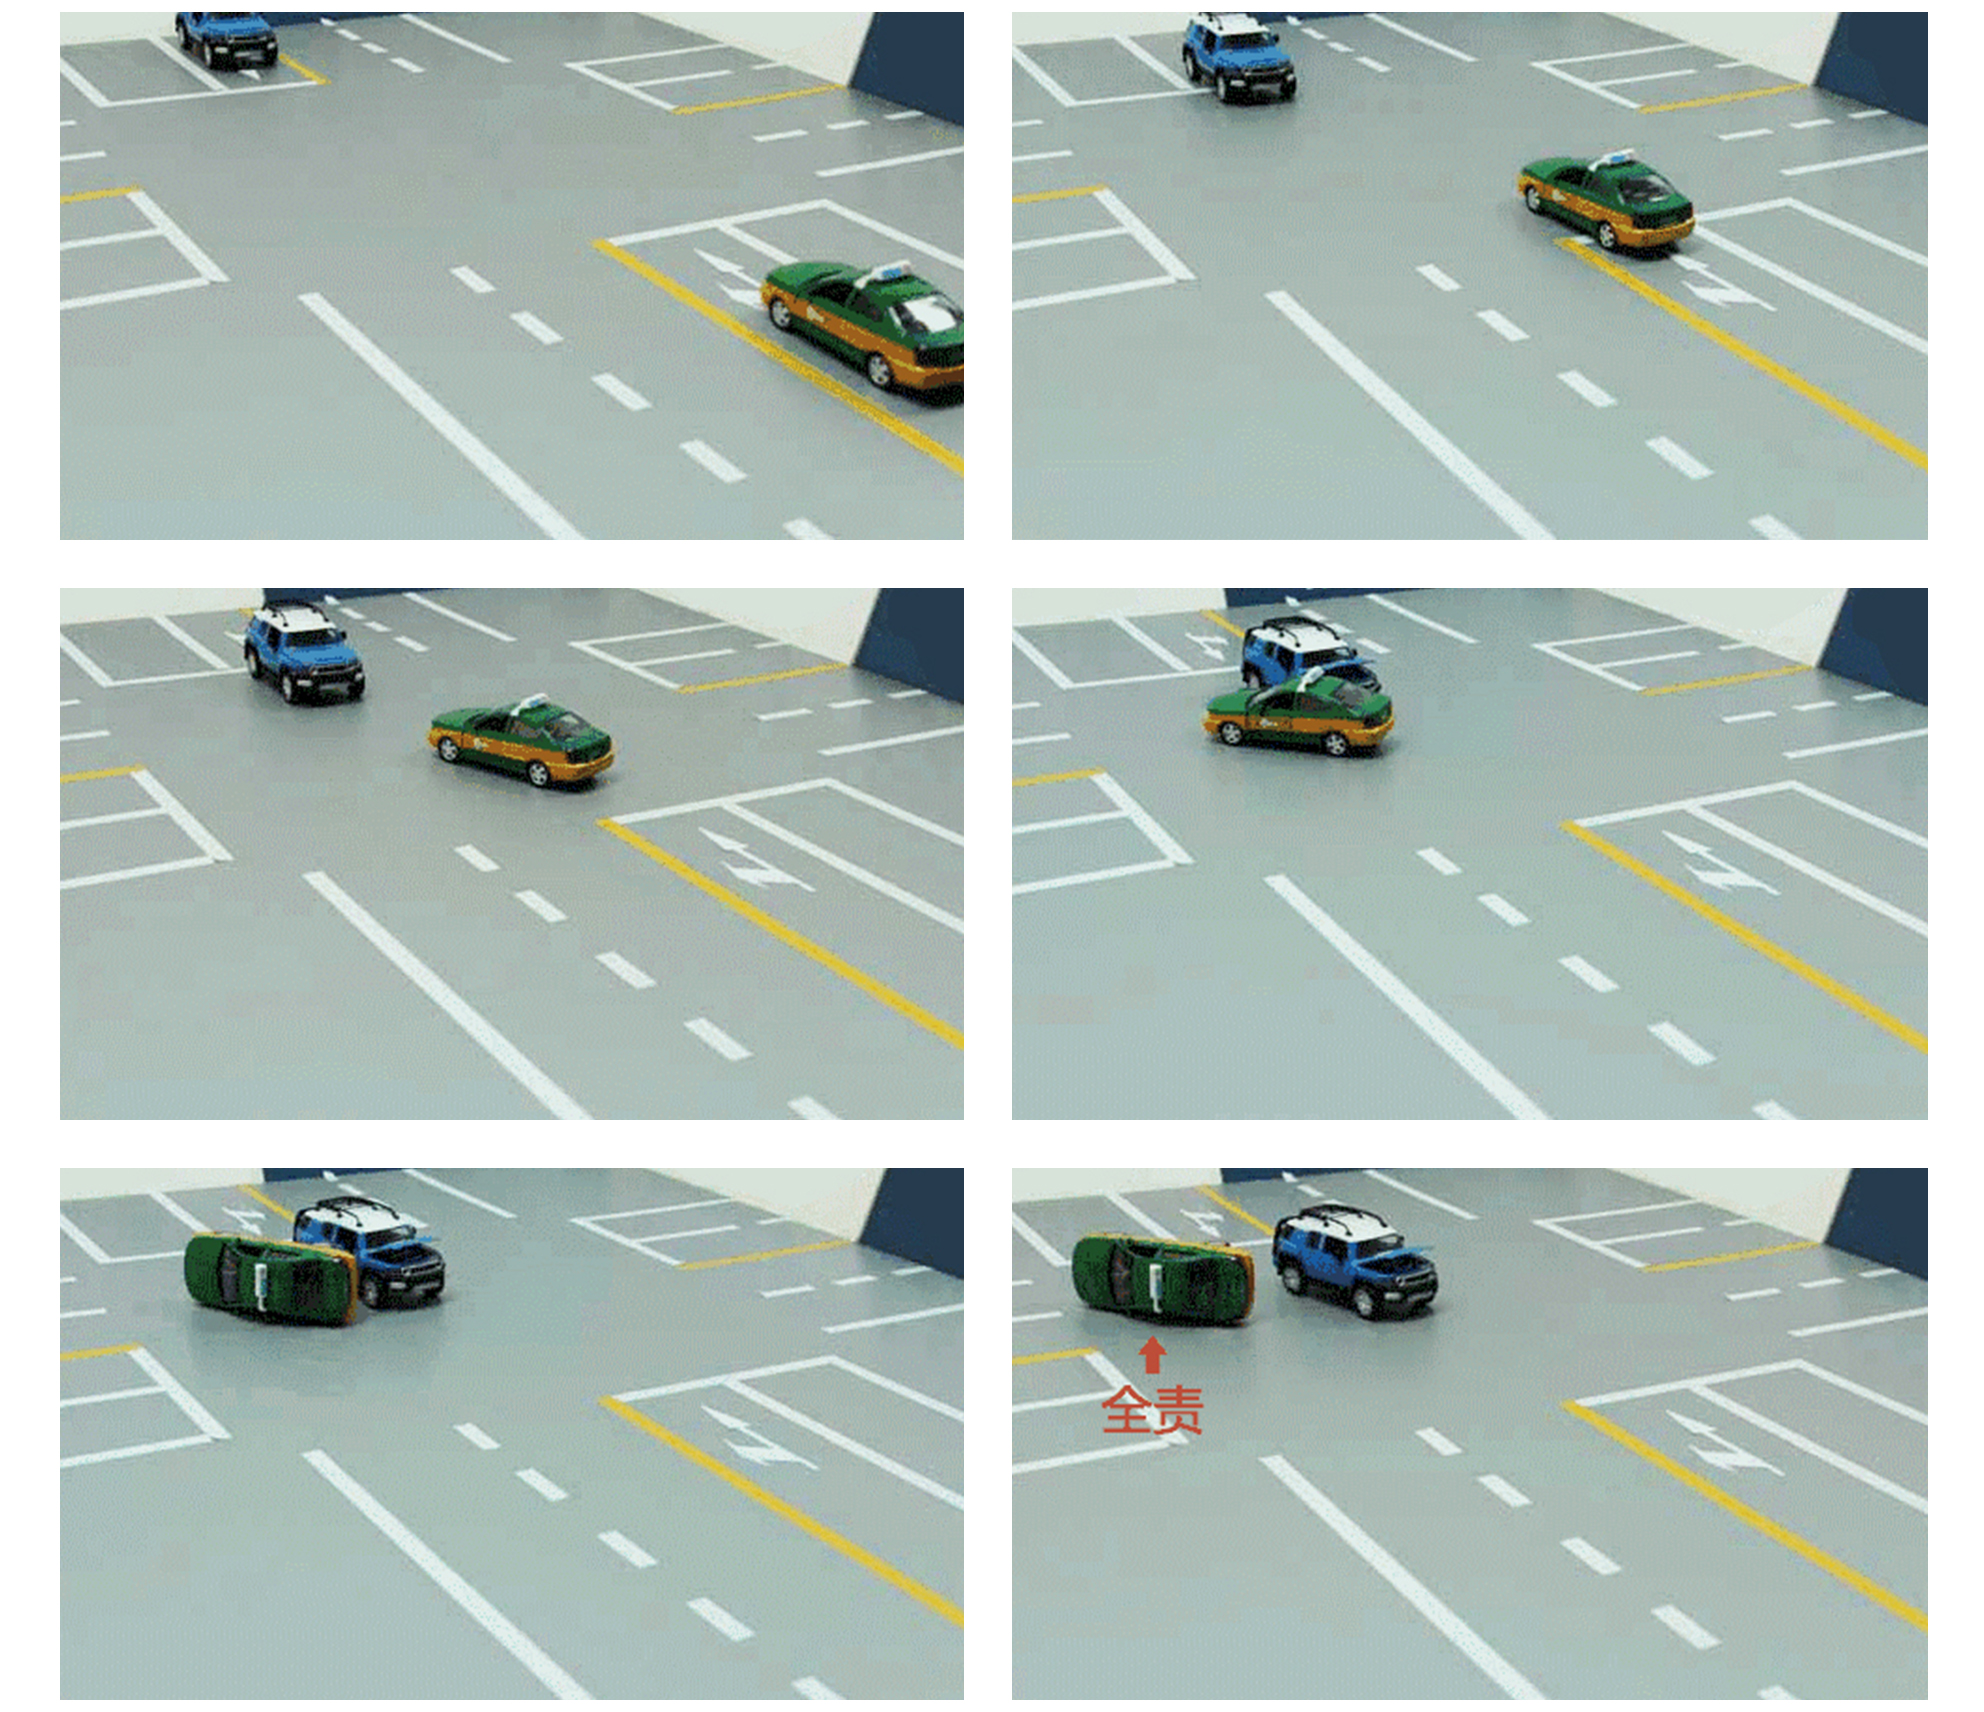 十字路口,绿灯直行,对向车道车辆左转没有让行,虽然是直行车辆撞的